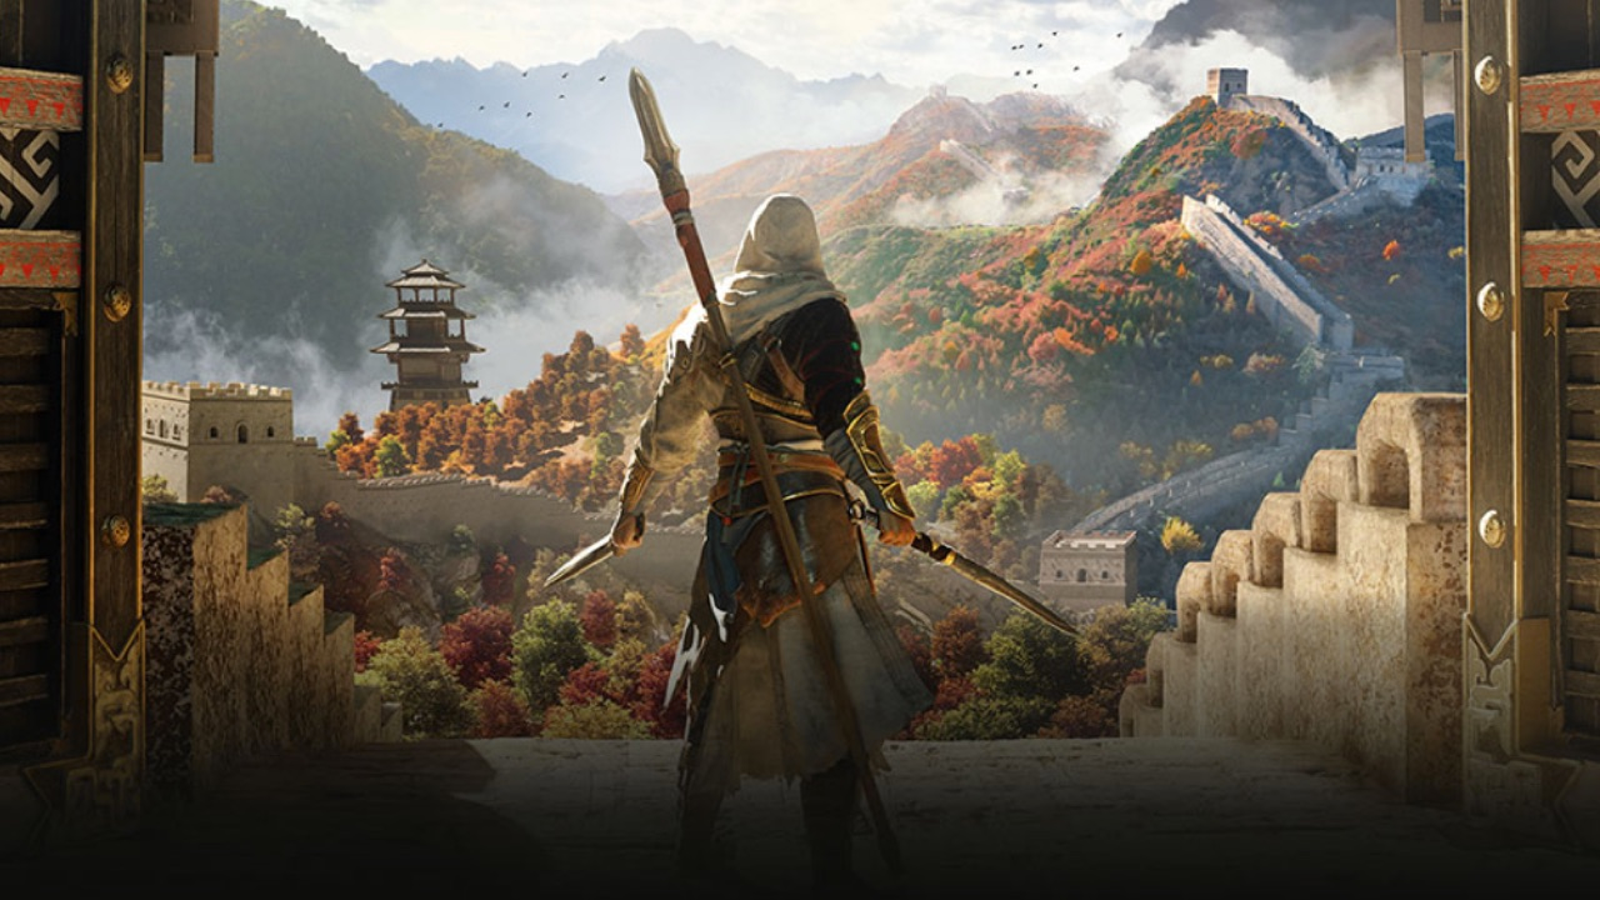 Assassin's Creed Jade-Official Website